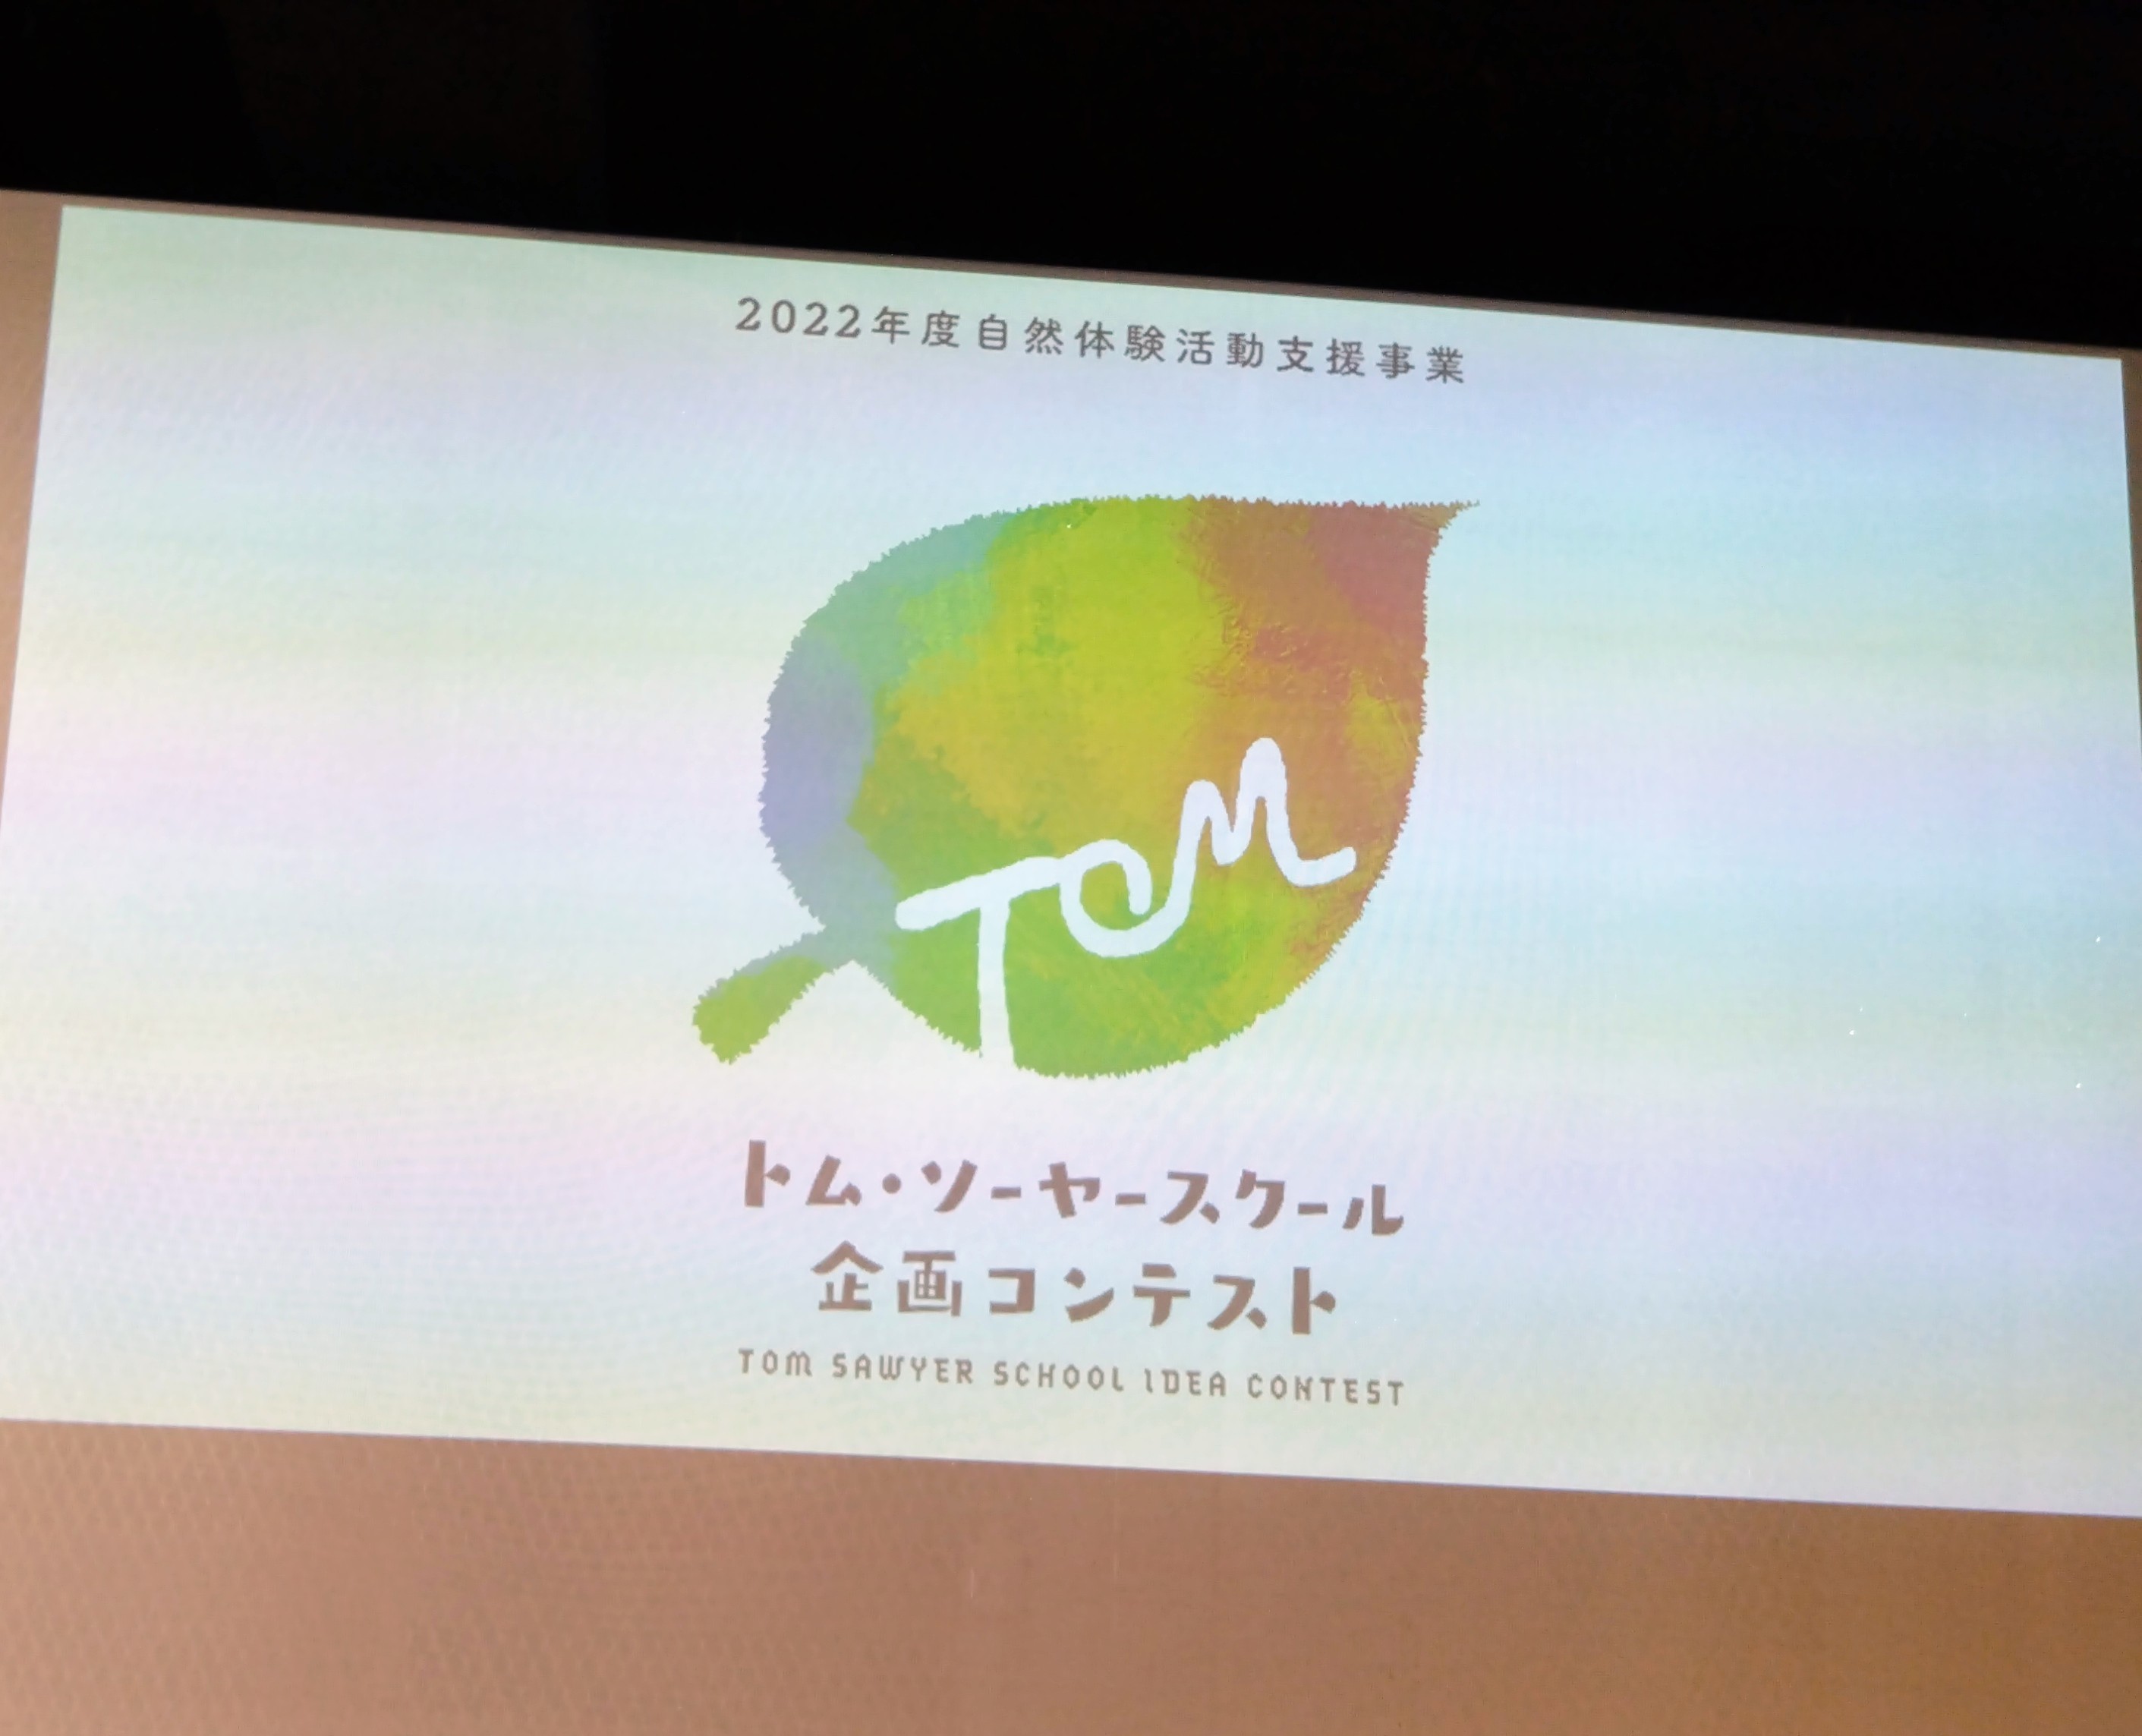 トムソーヤスクール企画コンテスト「優秀賞」を受賞_d0265607_22333050.jpg